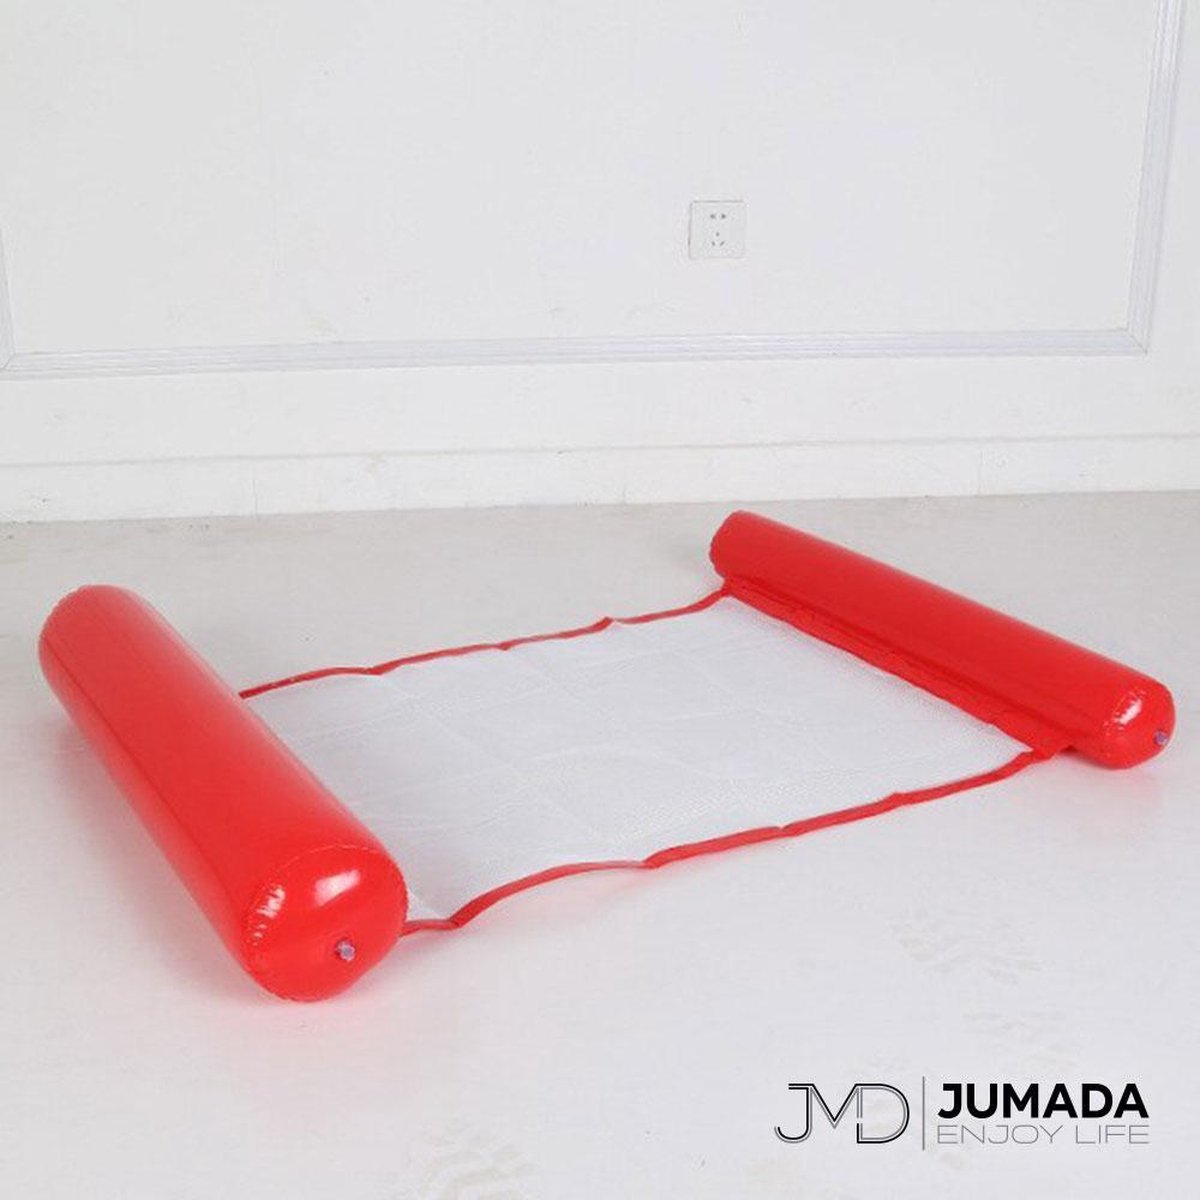 Jumada's Opblaasbaar Hangmat voor Zwembad - Luchtbed Zwembad - Luchtmatras - Waterhangmat - Rood